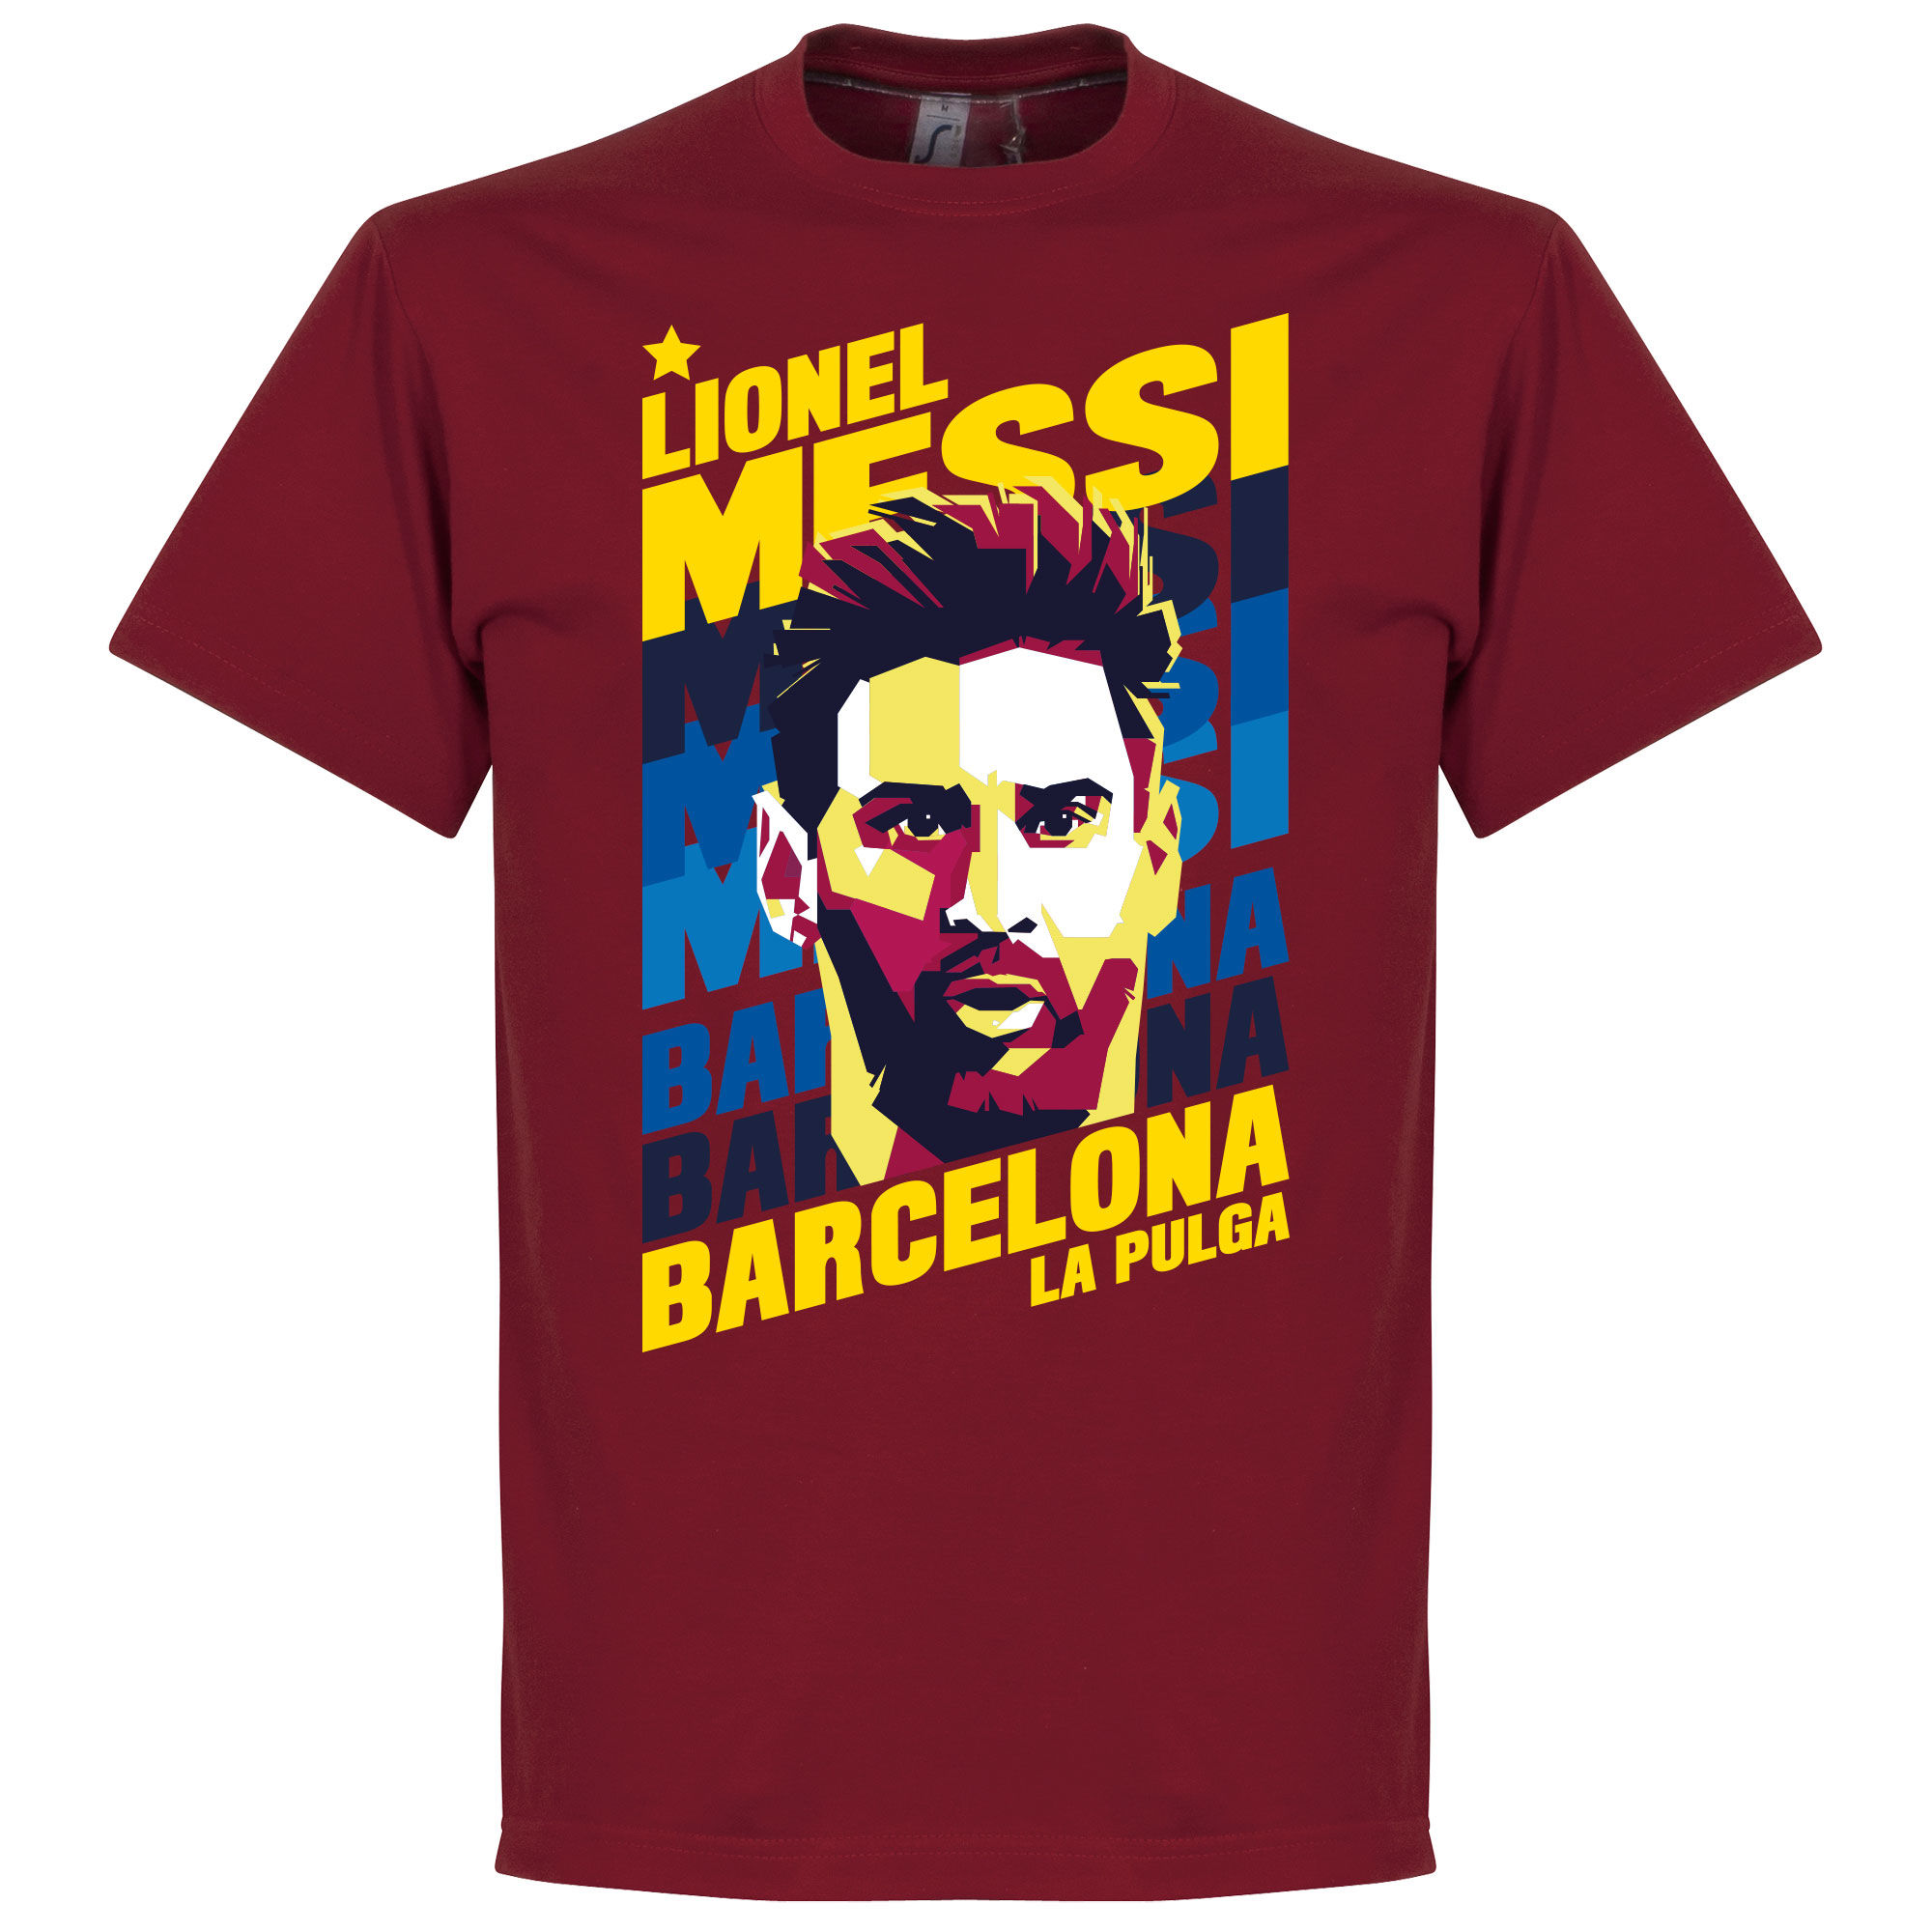 Barcelona - Tričko "Portrait" dětské - červené, Lionel Messi